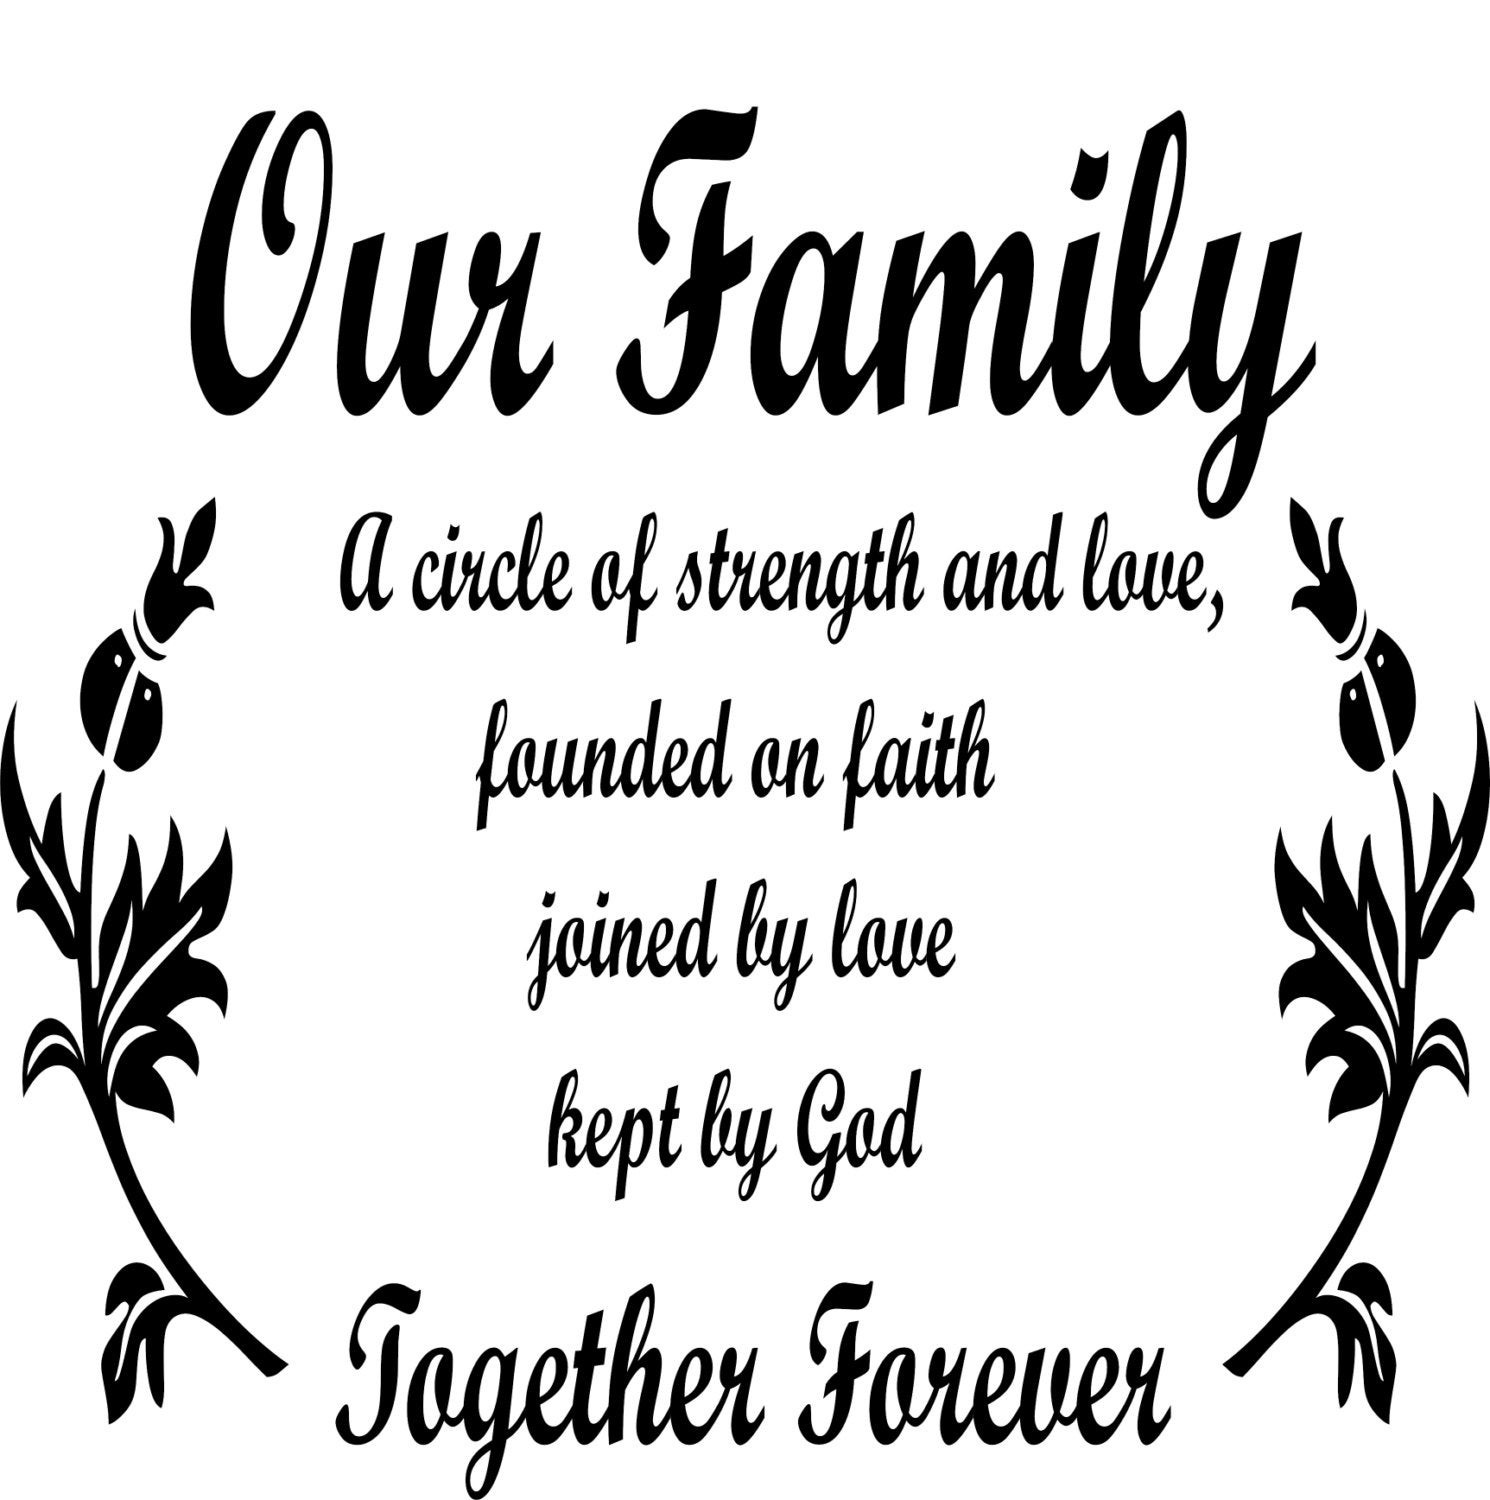 Family Faith Quotes
 Our Family A Circle of Strength Faith Love Kept By God